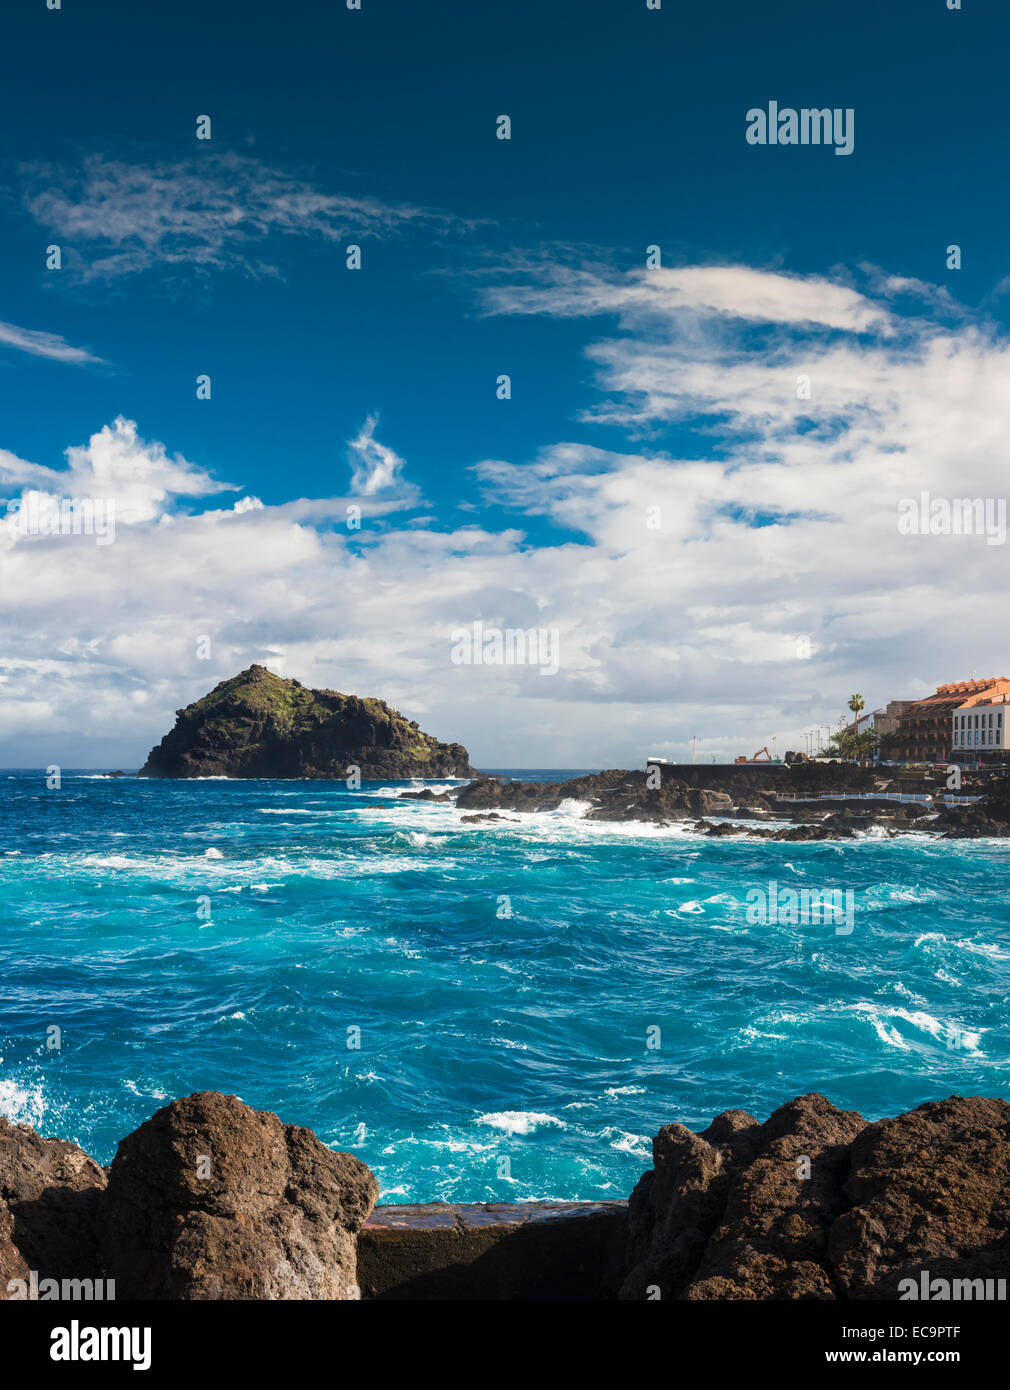 Mar picada en el puerto de Garachico, Tenerife, famoso por haber sido destruida por un flujo de lava en 1706. Foto de stock